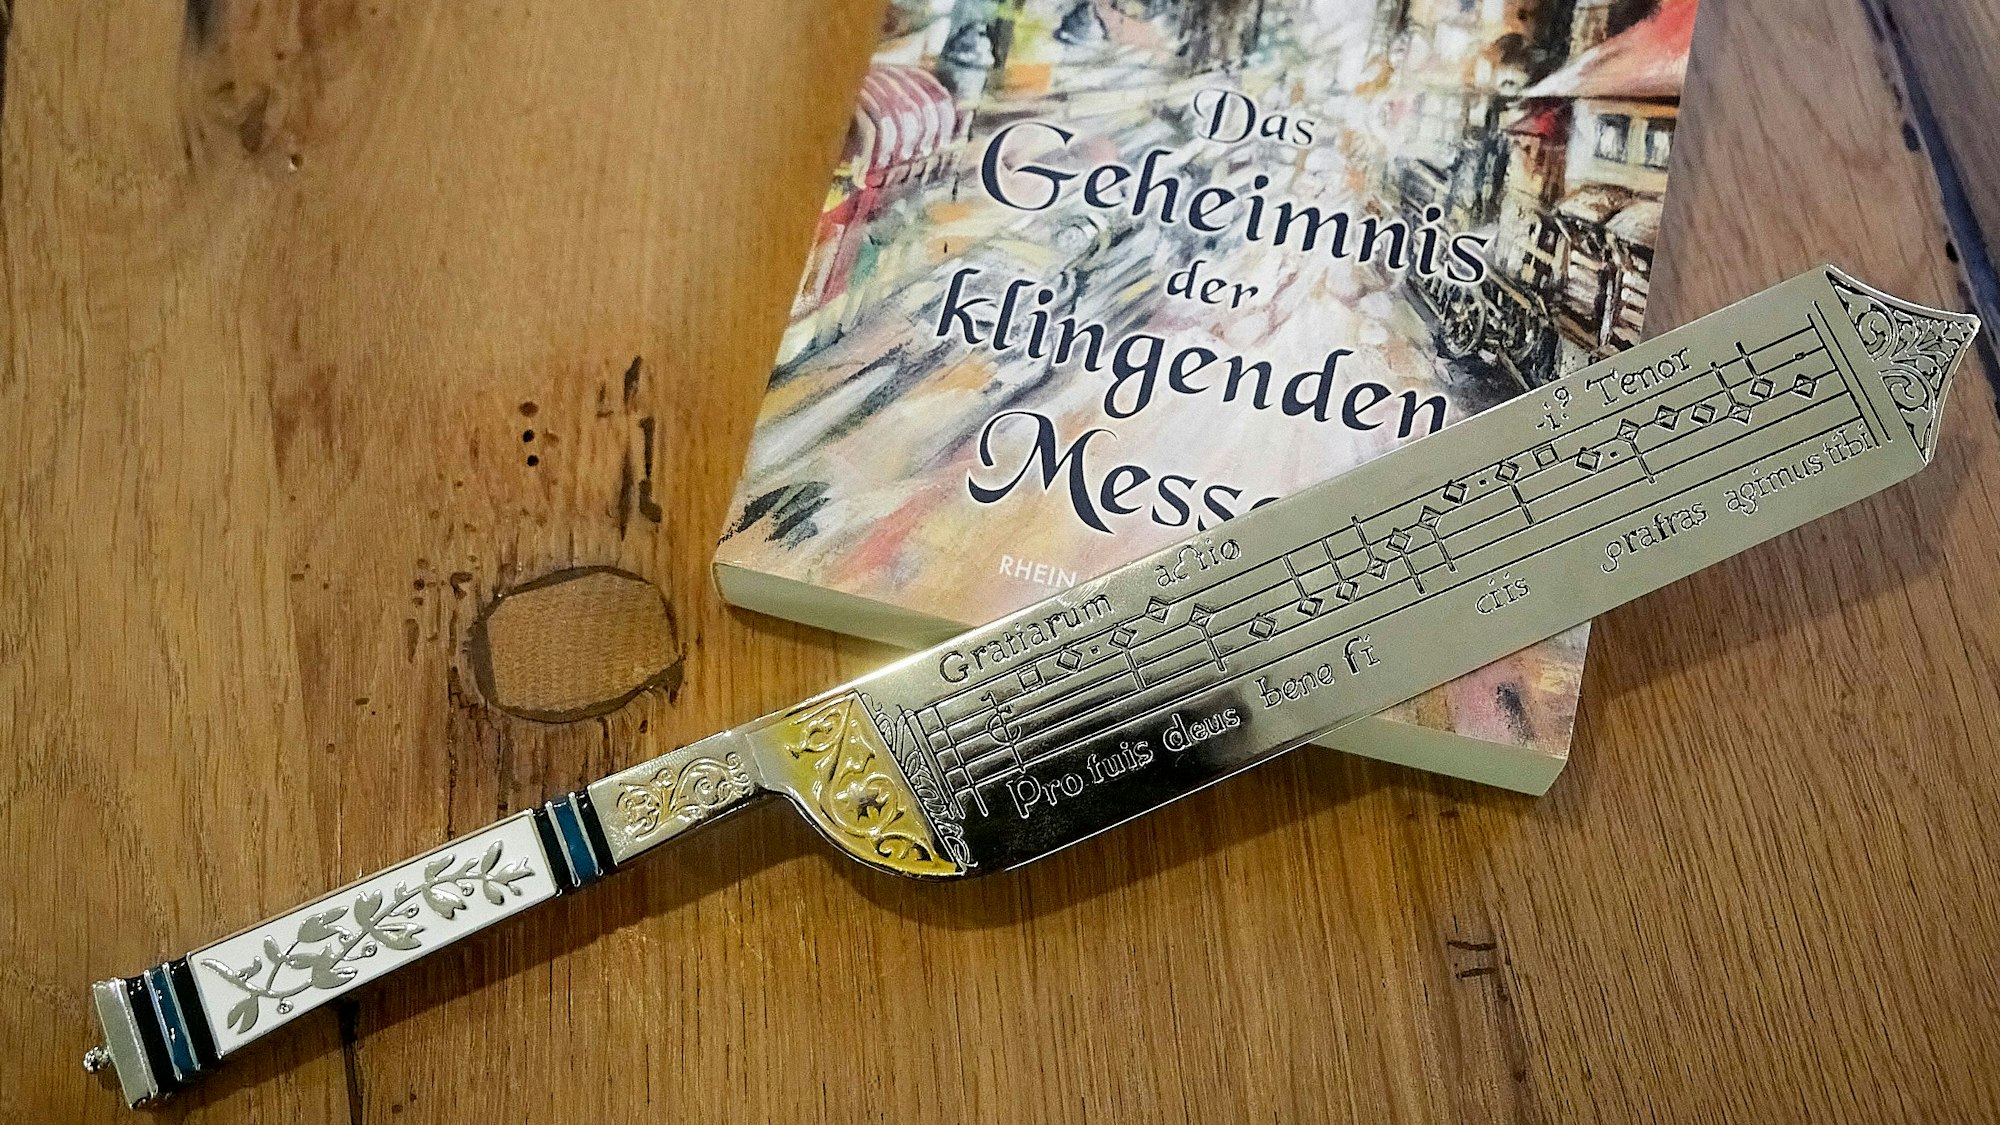 Ein kunstvoll gearbeitet Messer mit eingravierten Musik-Noten liegt auf einem Buch.